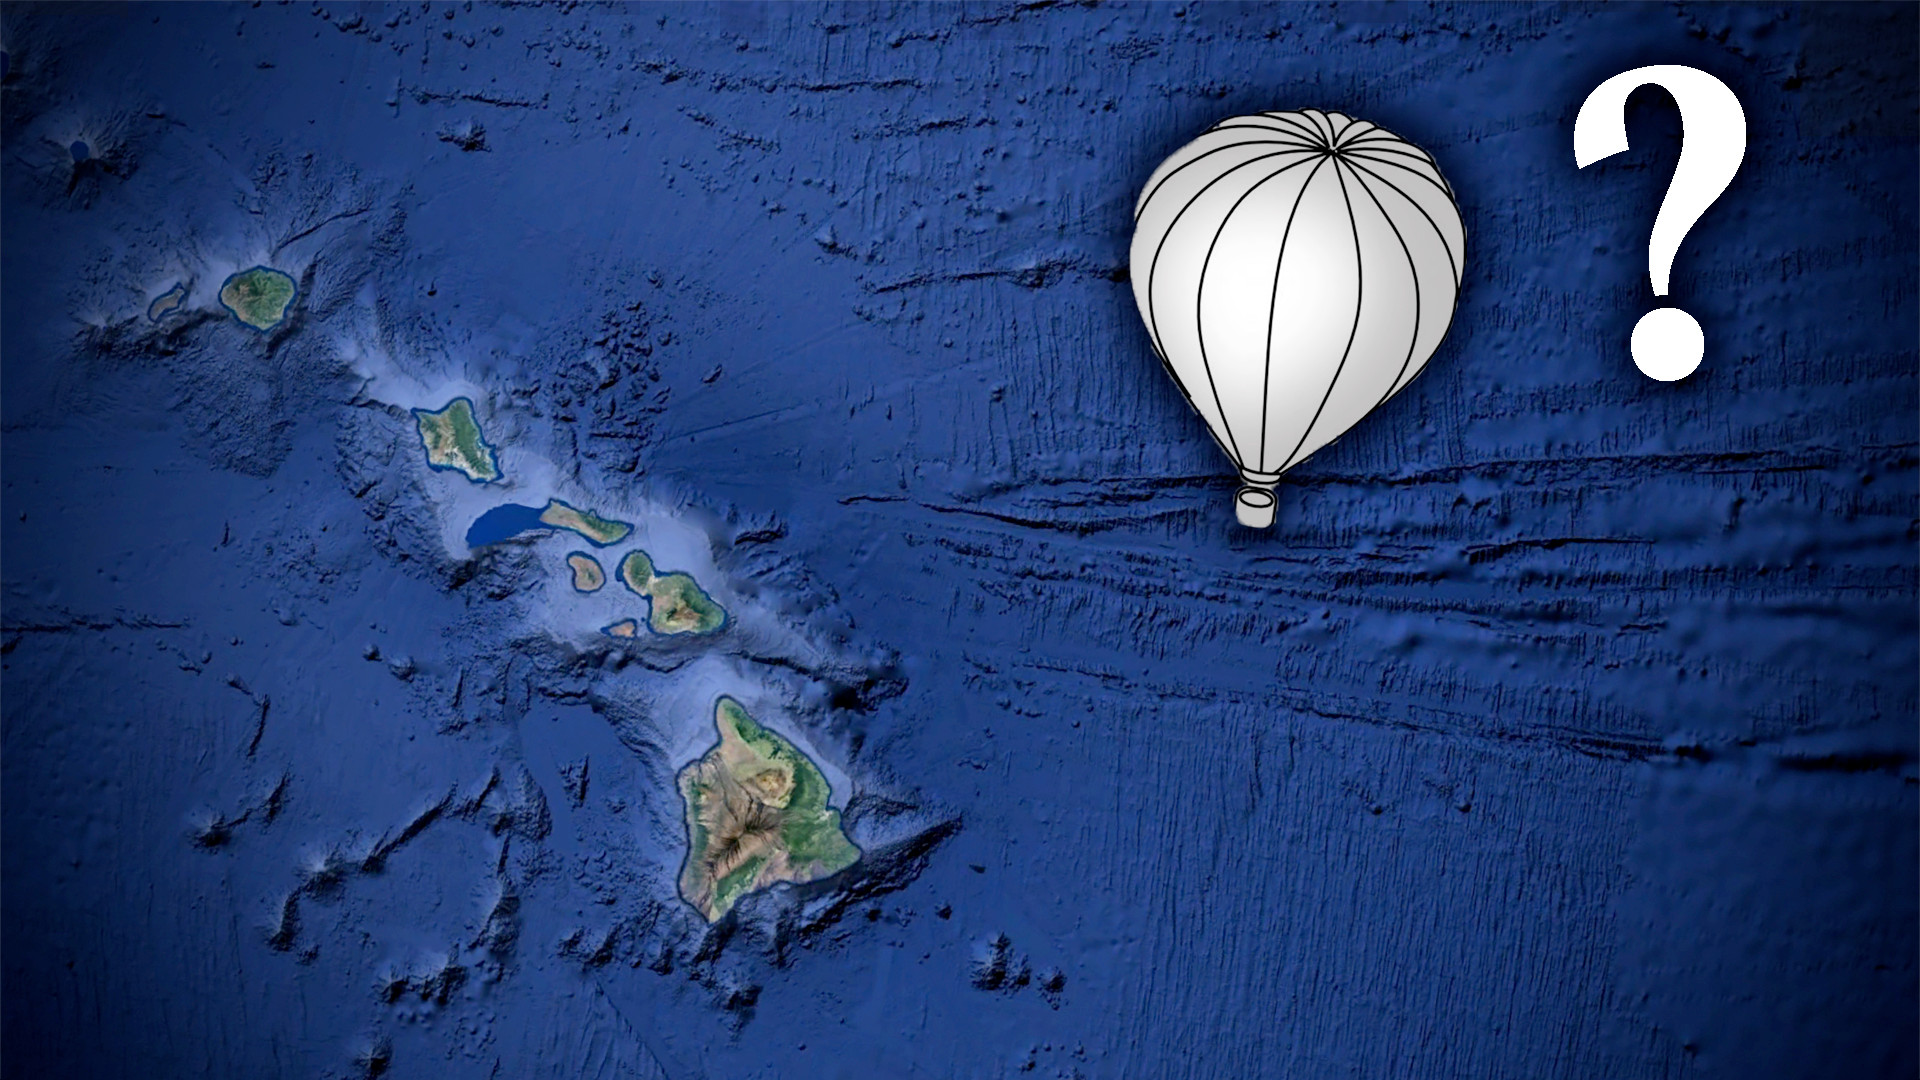 飞行员建议大型白色高空气球东方夏威夷(更新)